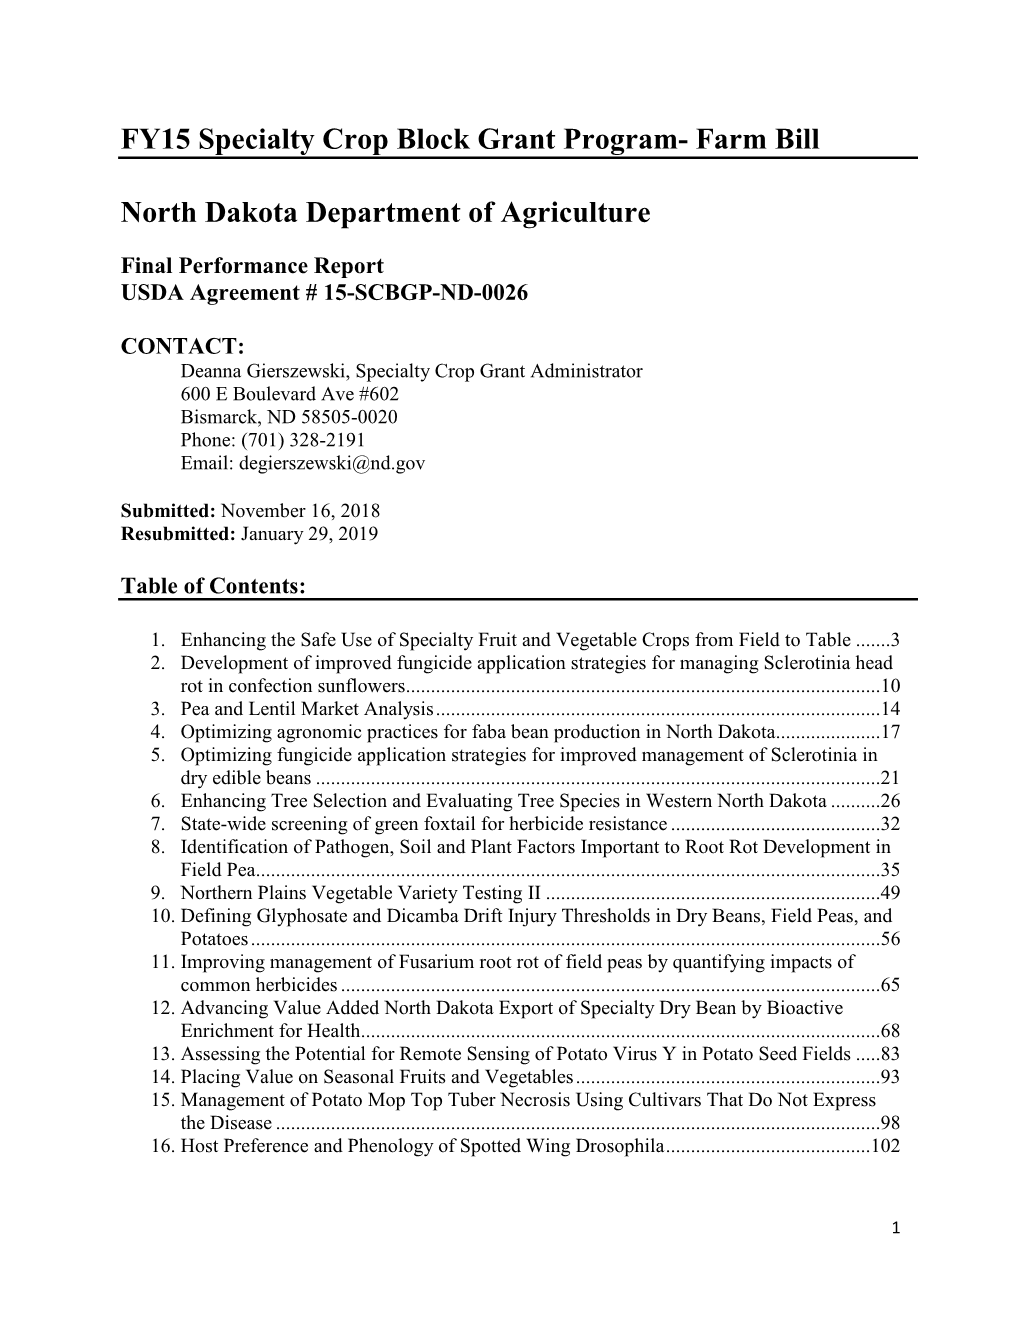 North Dakota Department of Agriculture $2605577.54 (Pdf)